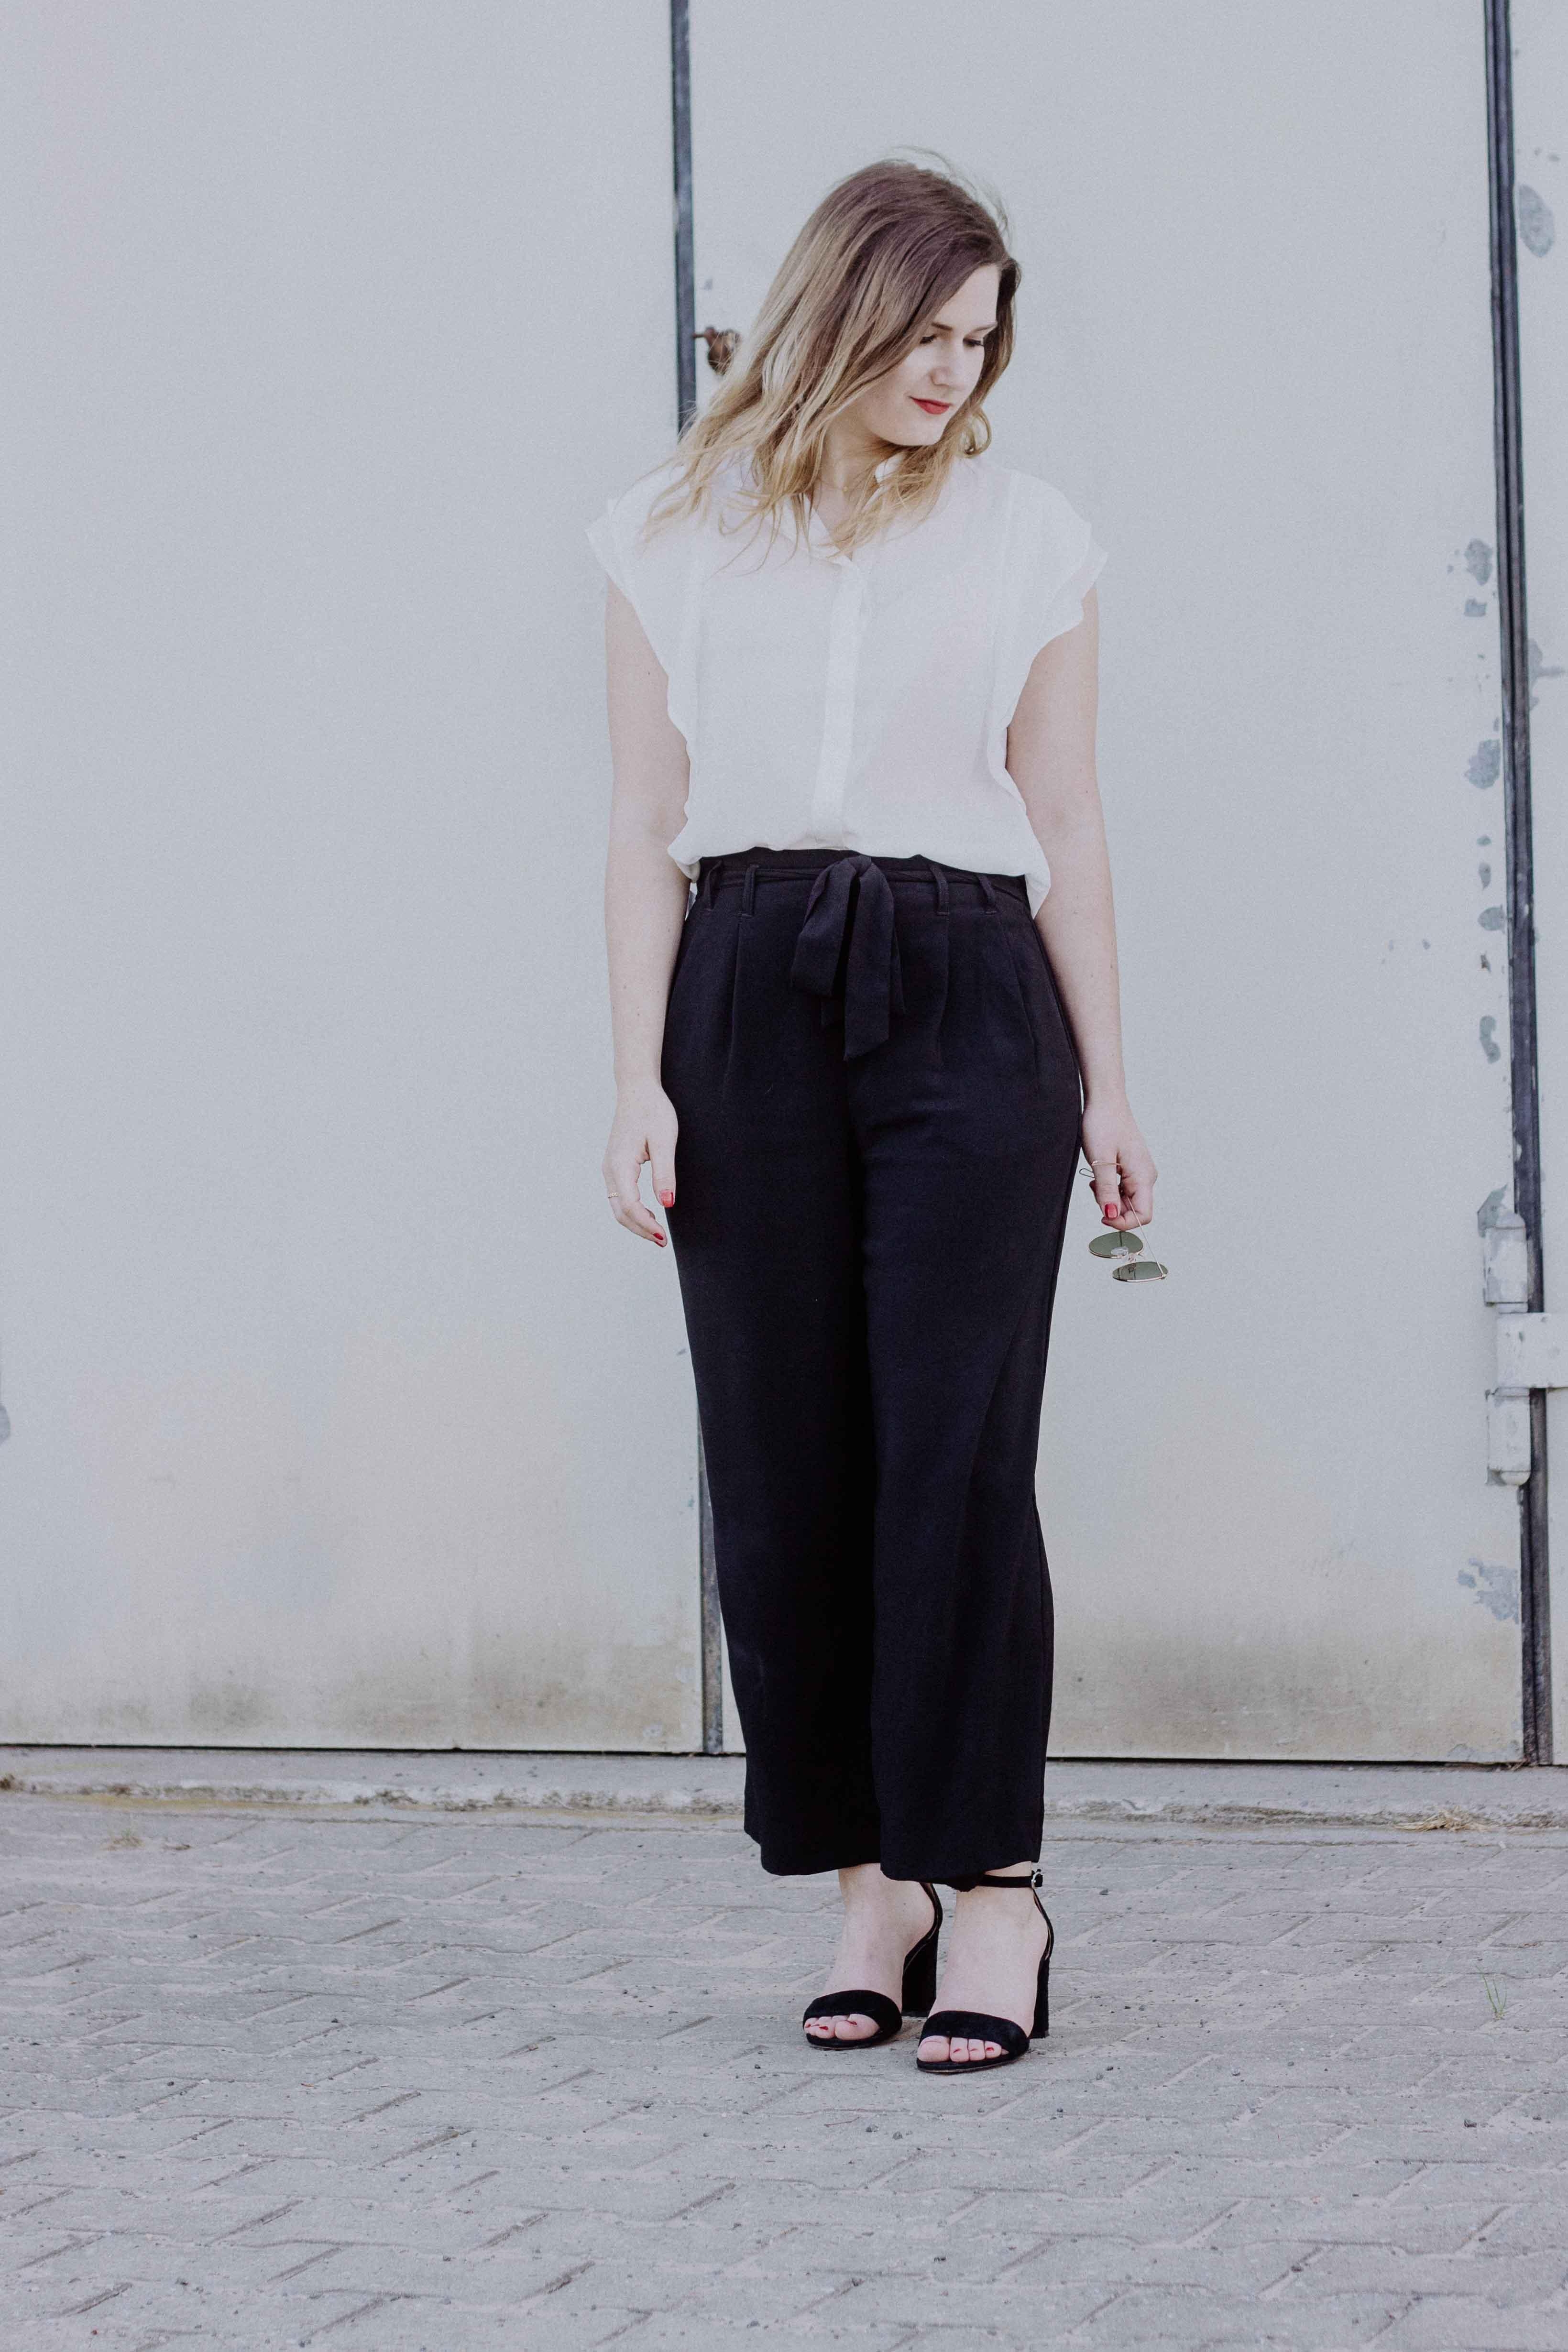 Es gibt nichts besseres für den Sommer als leichte, weite Hosen!
#fashionlieblinge #culotte #bluse